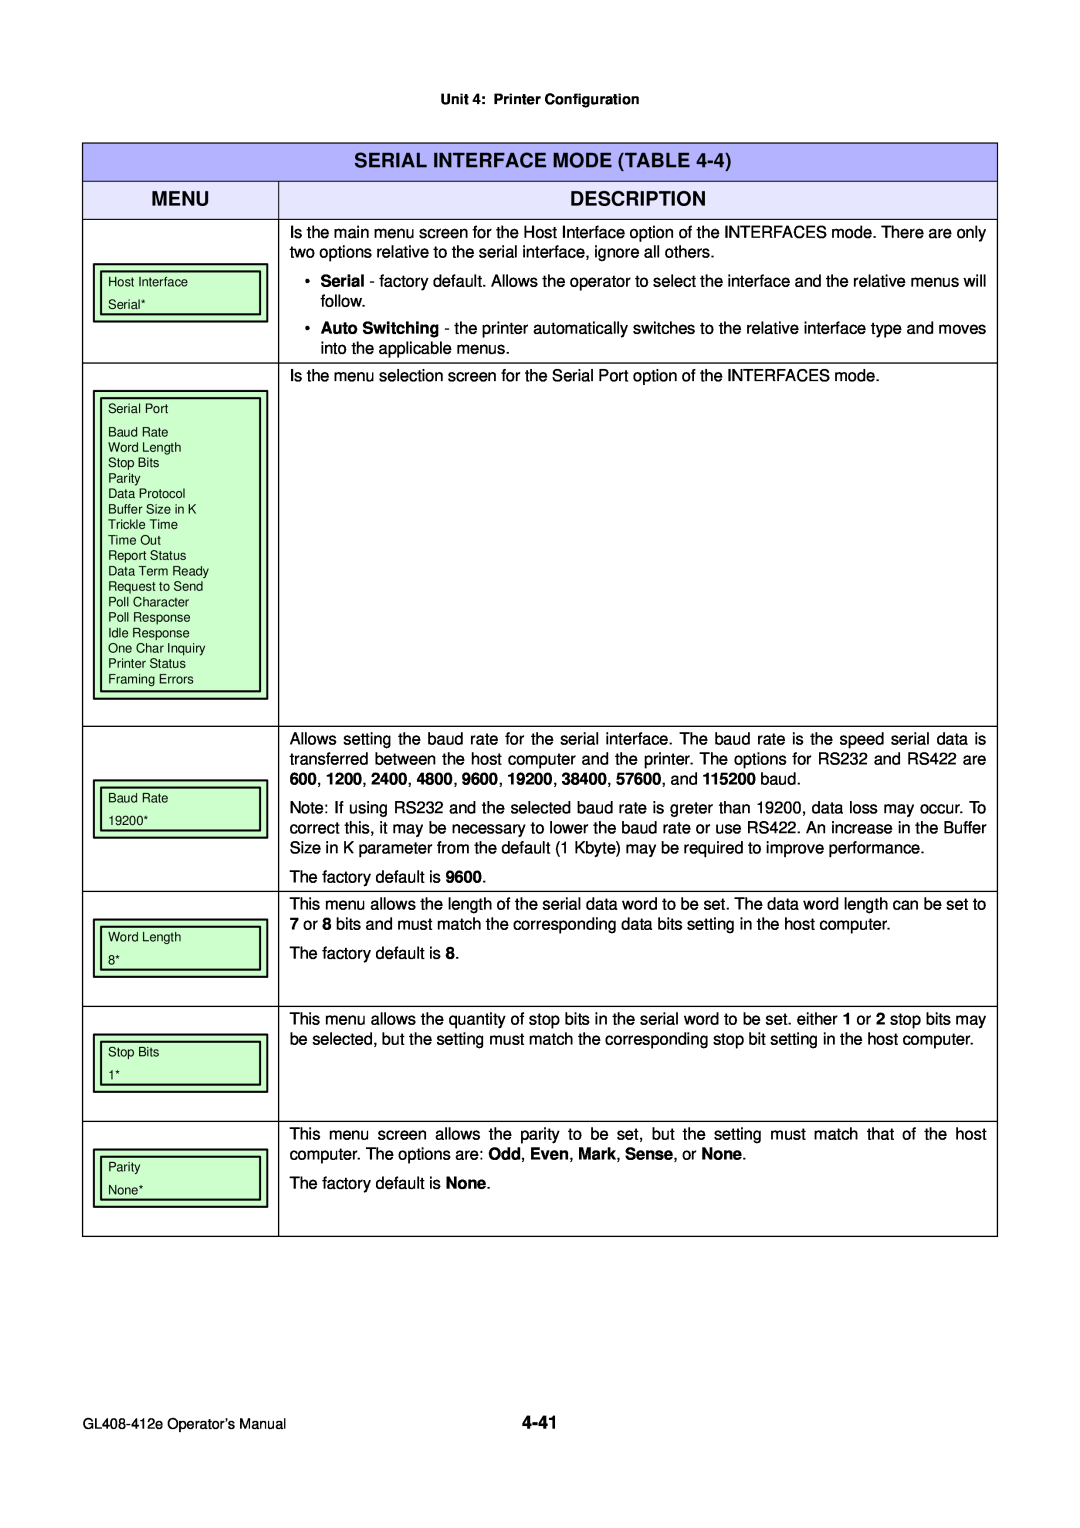 SATO GL4XXE manual Menu, Description, Serial Interface Mode Table 